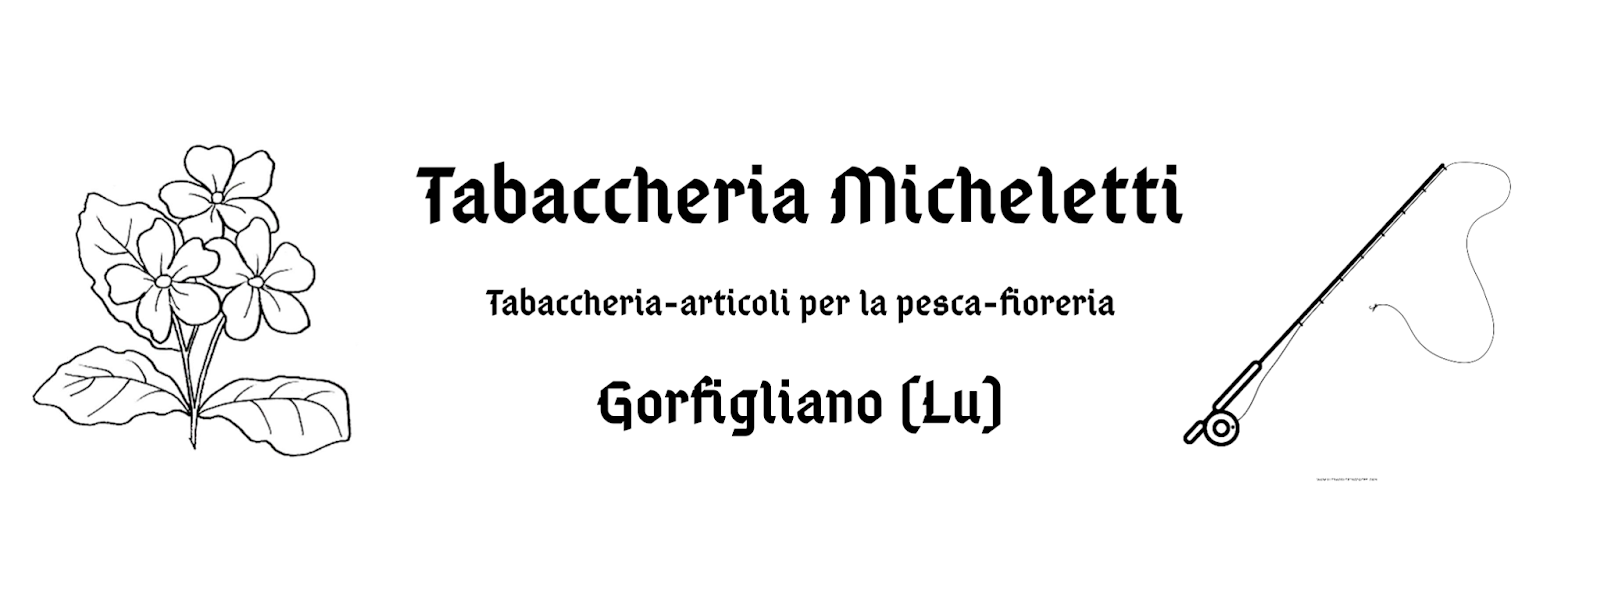 Tabaccheria Micheletti